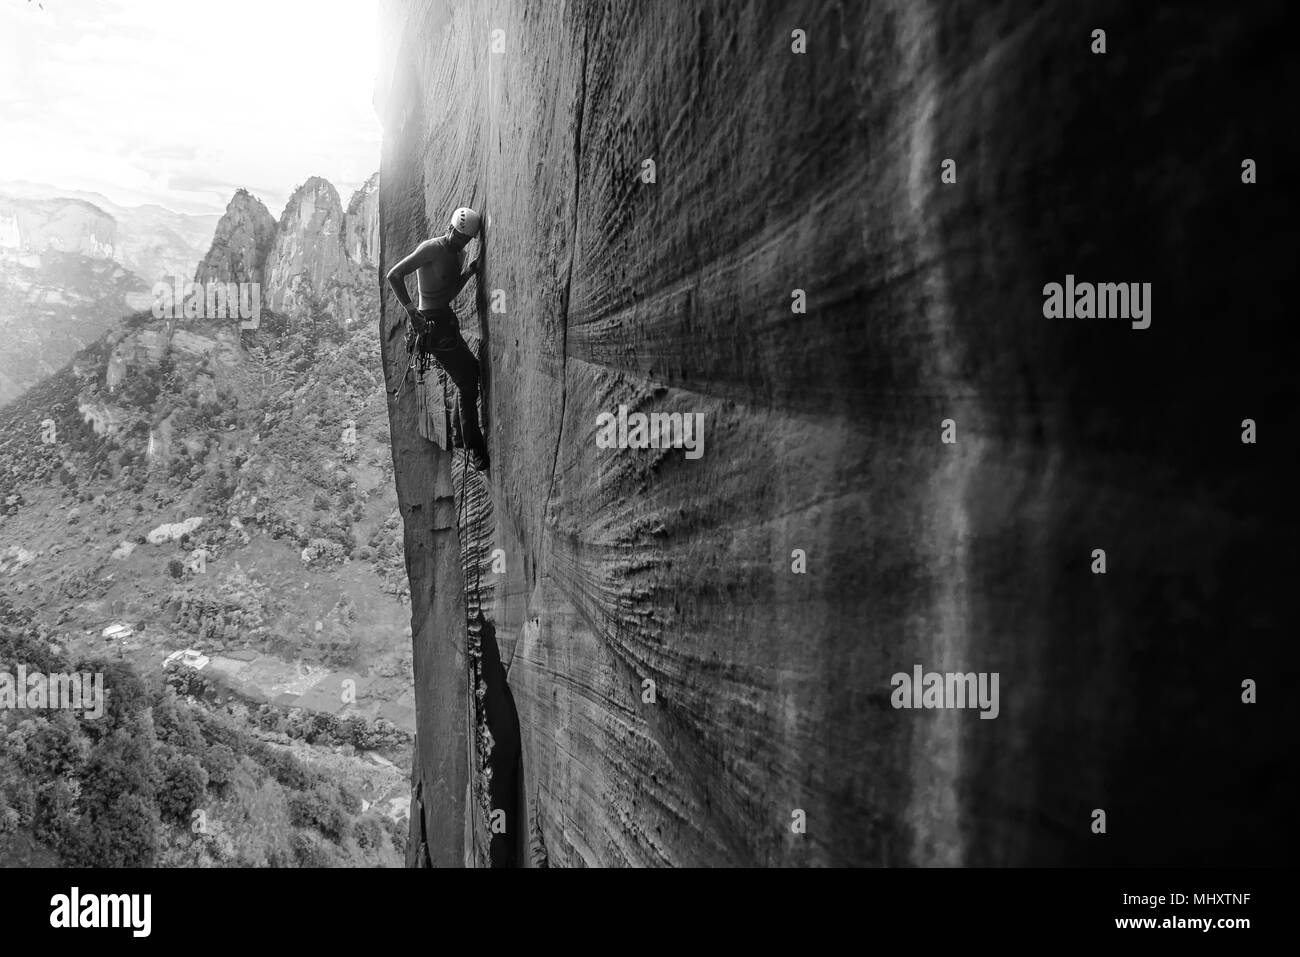 Rock climber climbing rock de grès, le chaulage, Province du Yunnan, Chine Banque D'Images